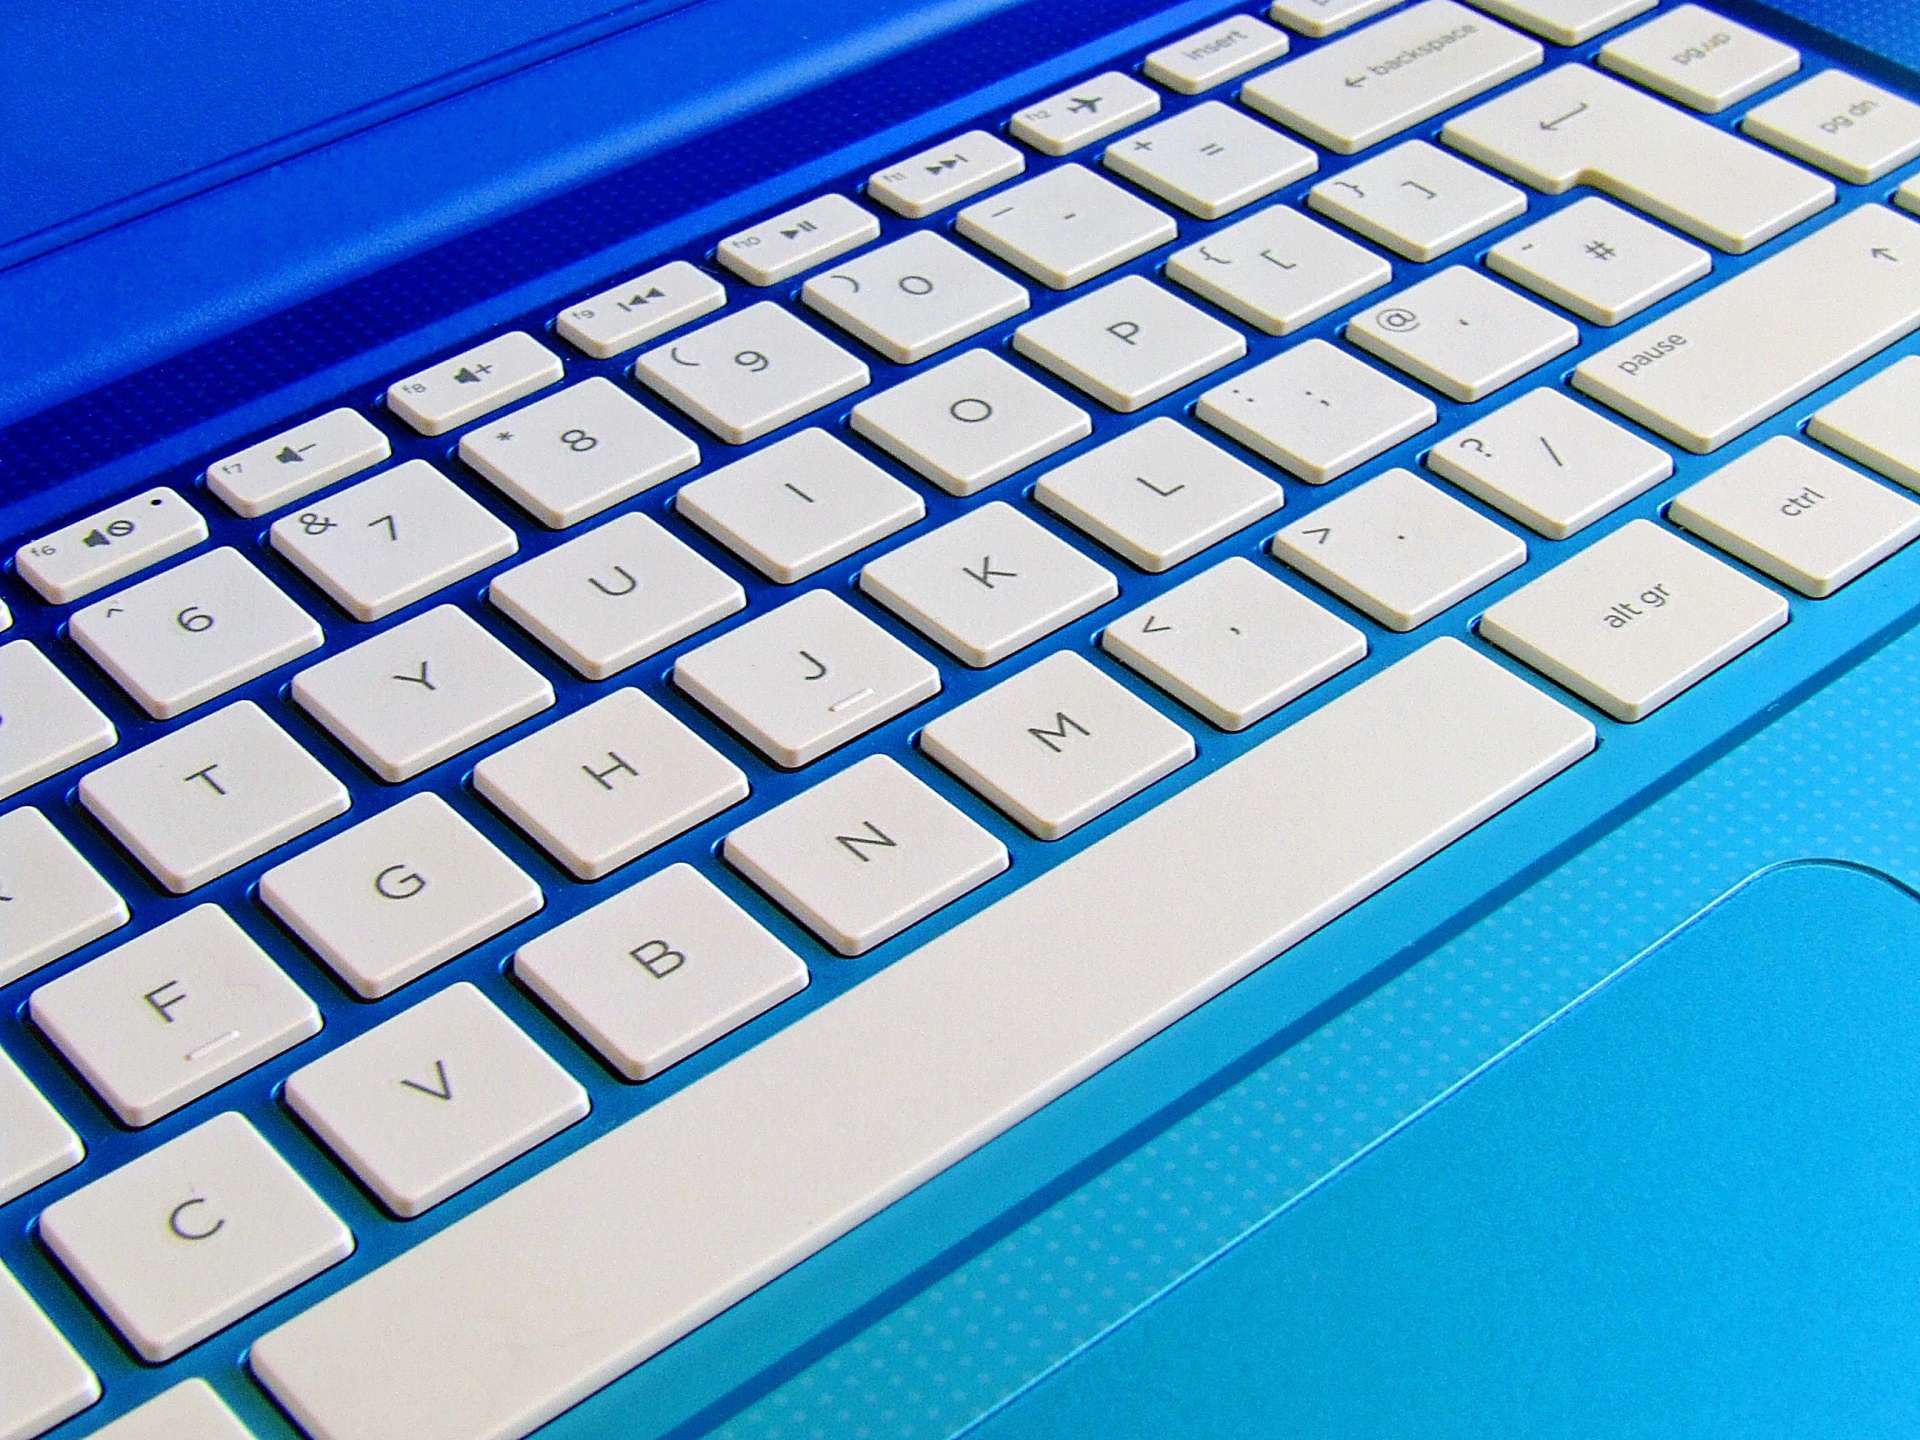 laptop keyboard computer keyboard white keyboard free photo